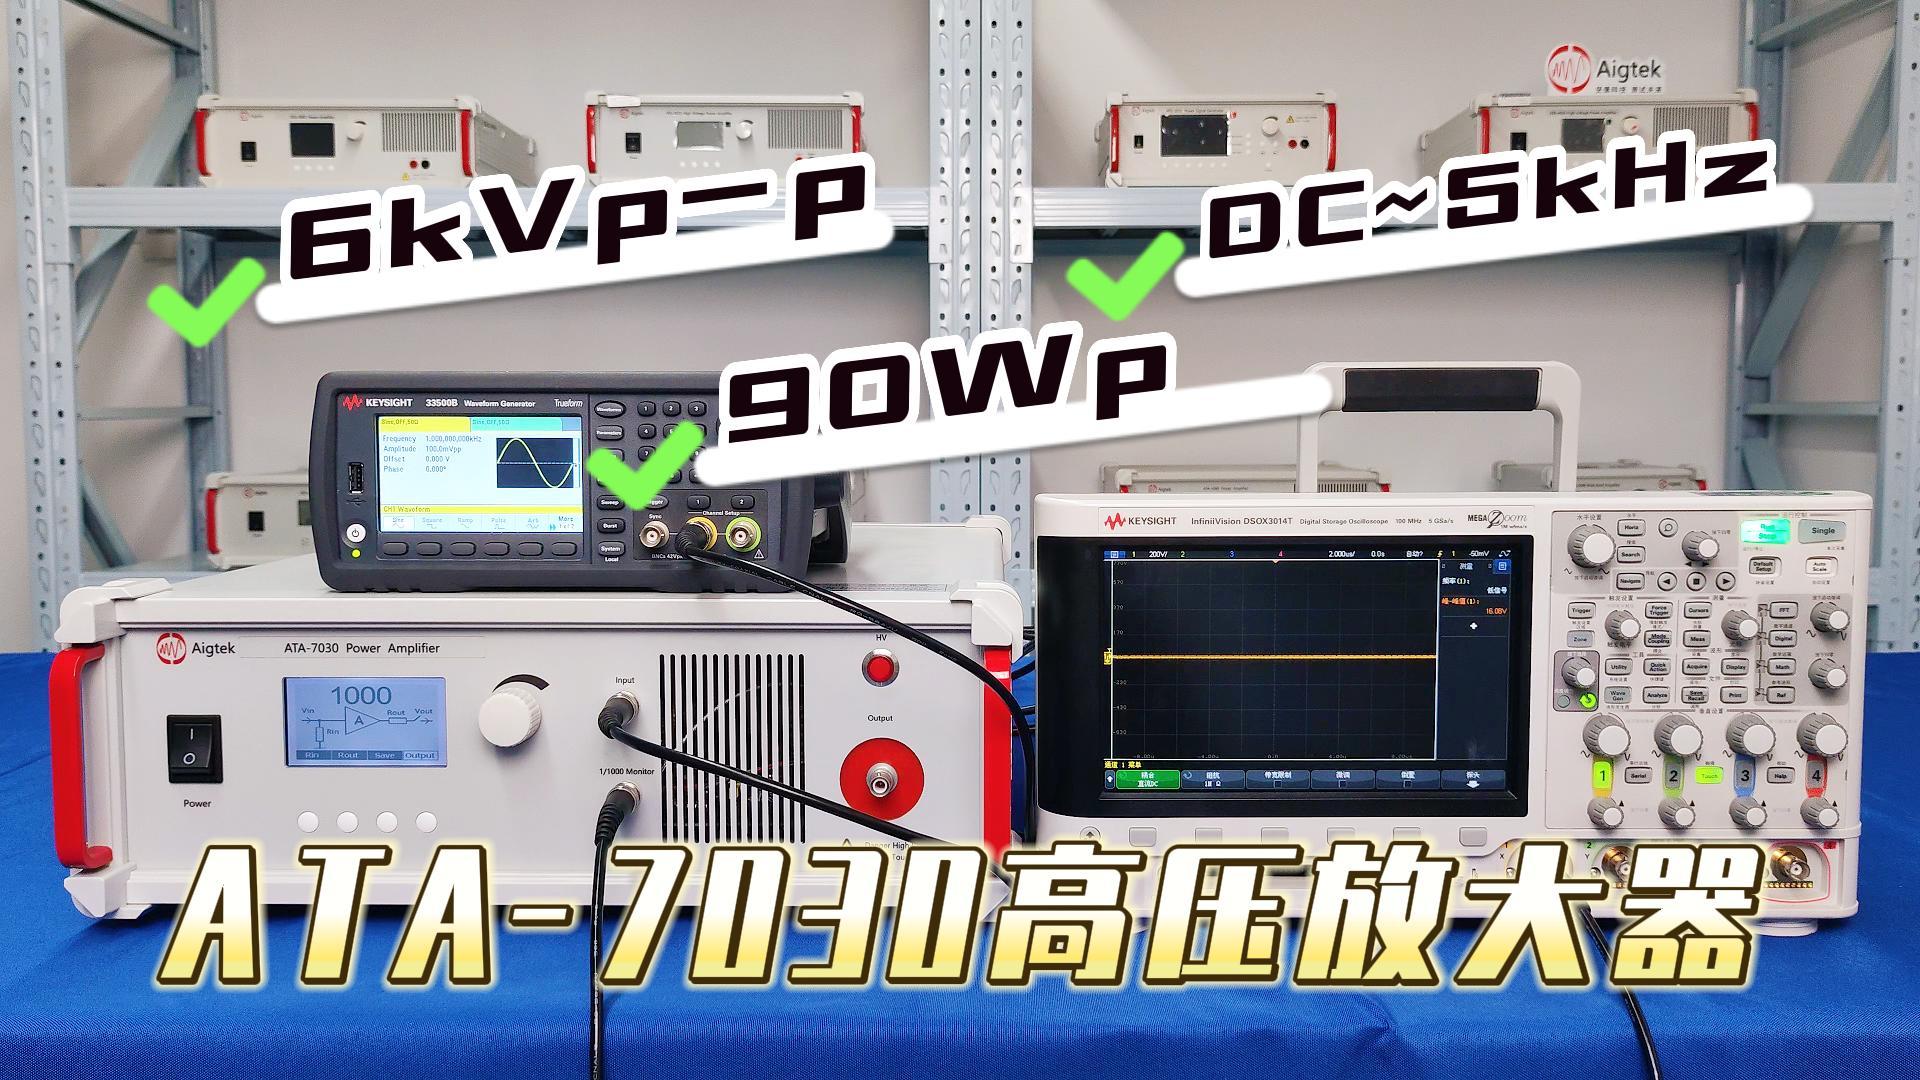 如何用功率放大器驱动高压型负载？6kVp-p可达！（ATA-7030）#功率放大器 #仪器仪表 #高压 